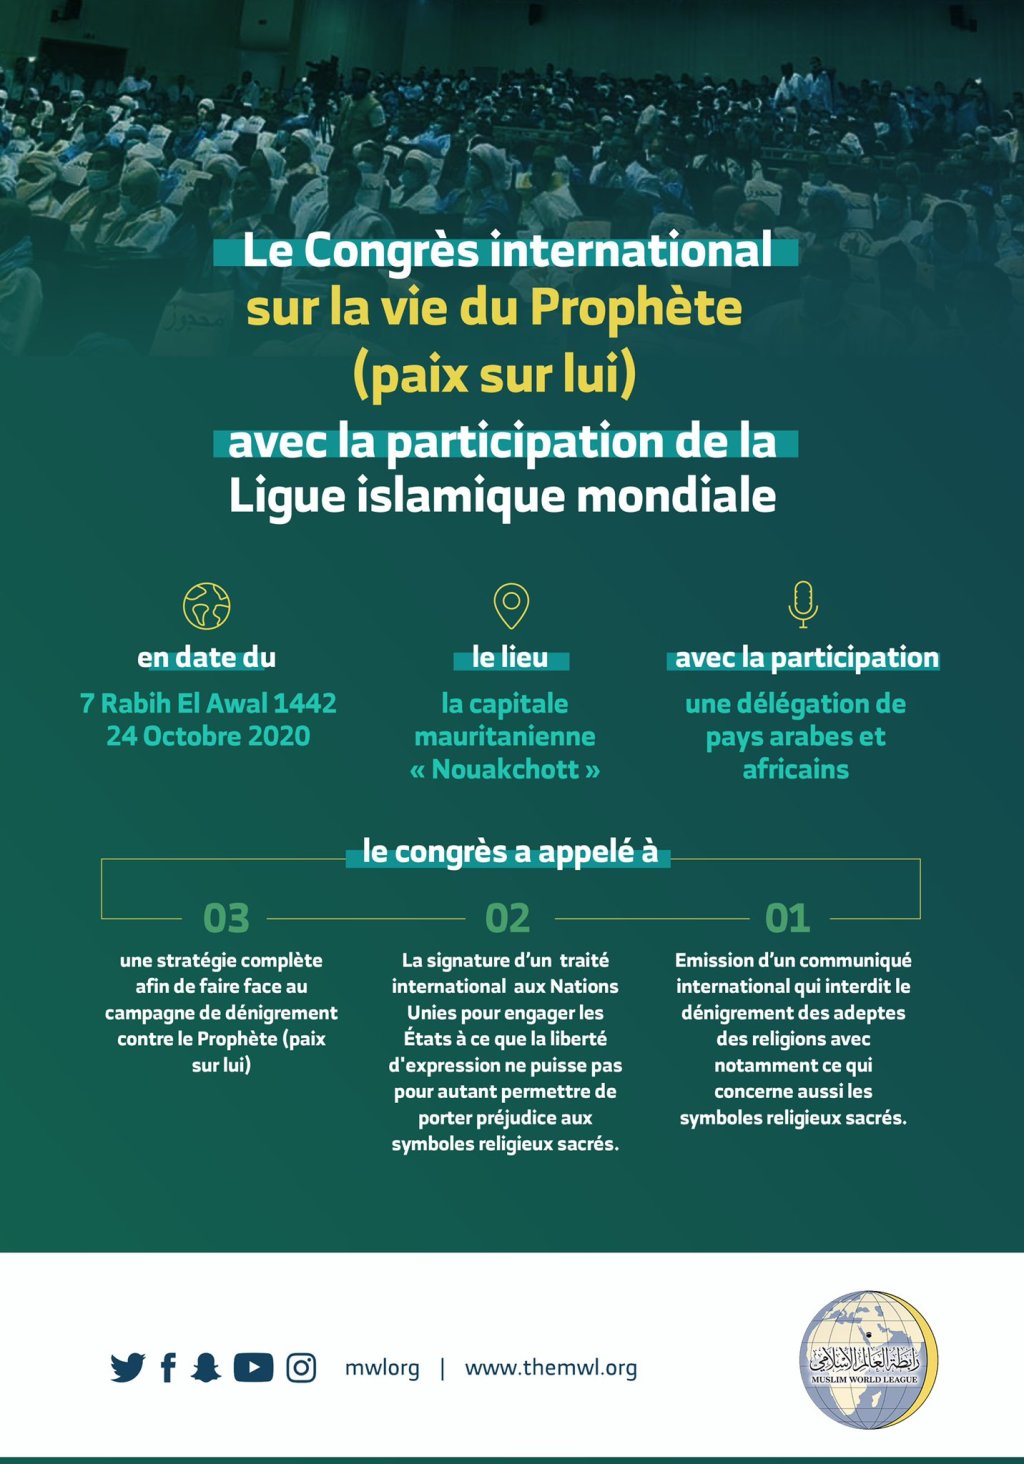 Participation de la Ligue Islamique Mondiale au congrès international sur la vie du Prophète (paix sur lui) à Nouakchott qui a appelé à émettre un communiqué pour interdire de porter atteinte à l’Islam et le dénigrement de tous les messagers